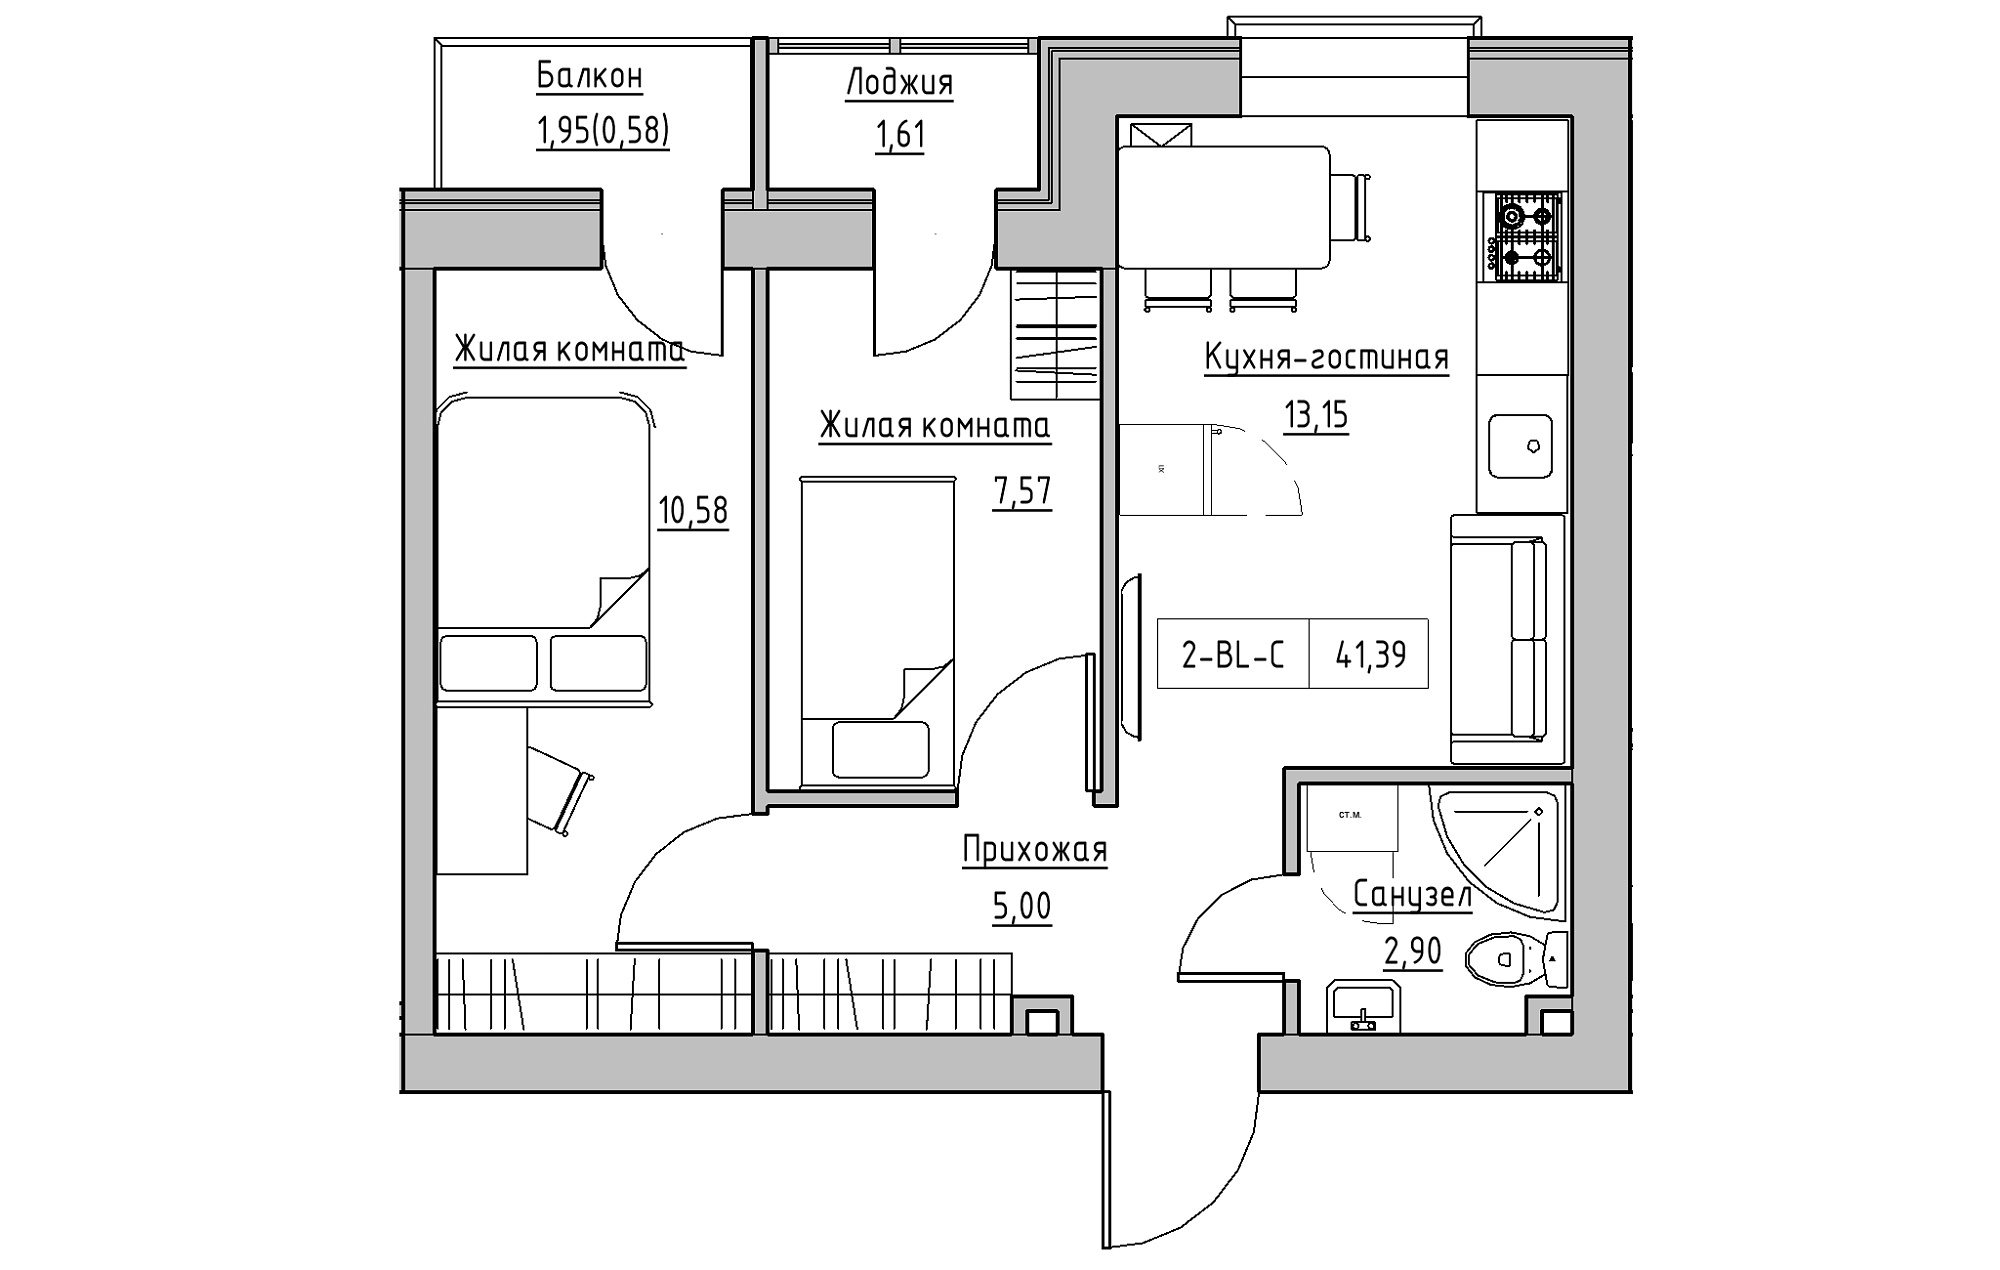 Планування 2-к квартира площею 41.39м2, KS-018-03/0005.